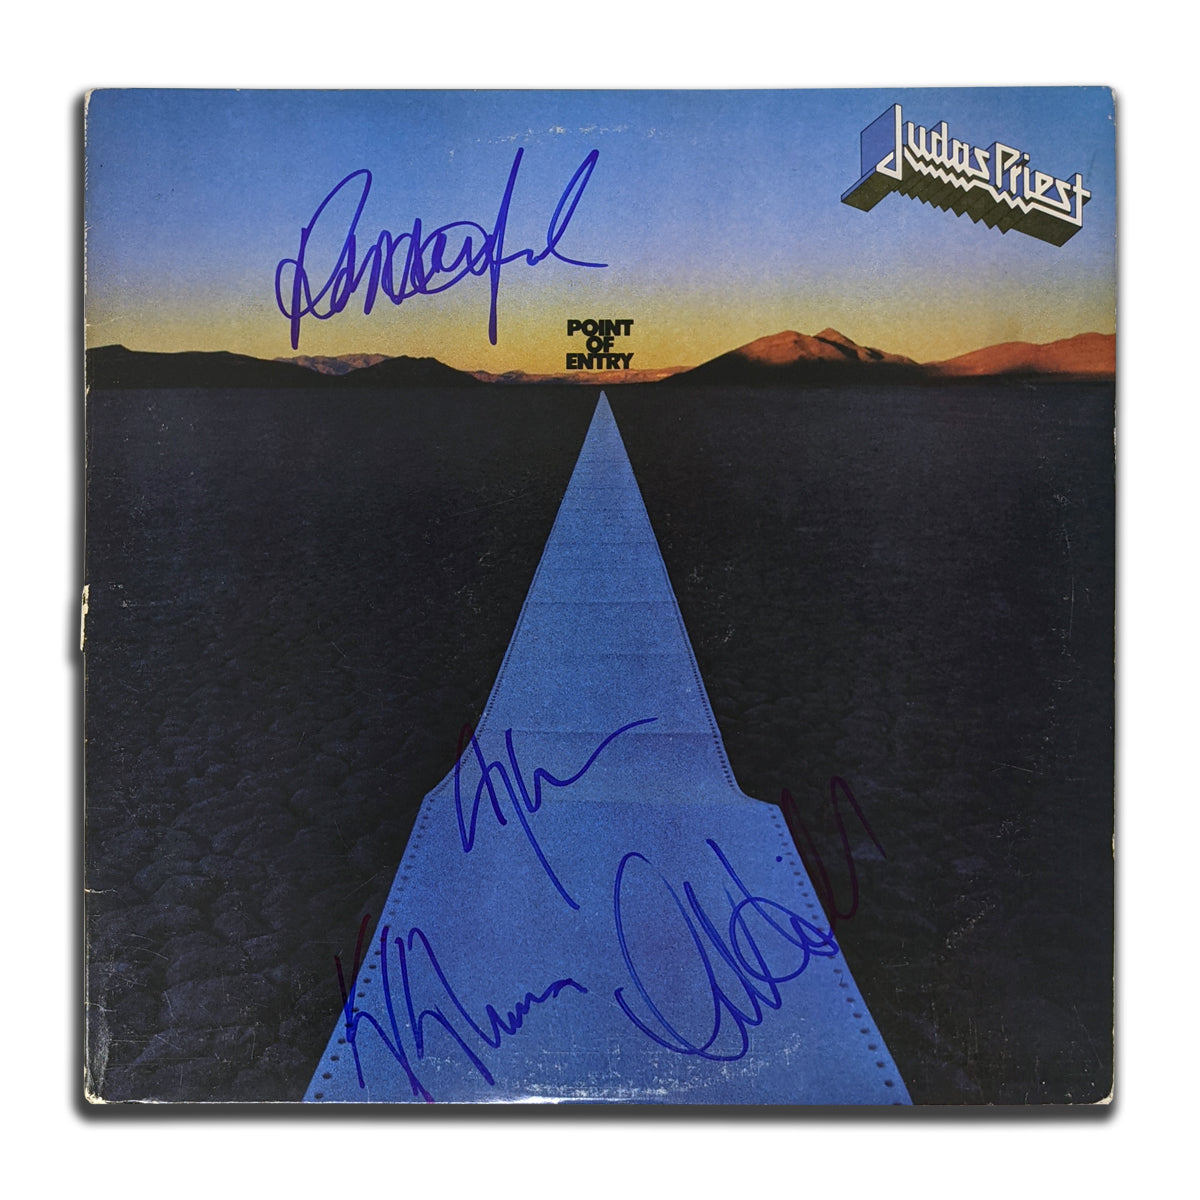 Halford Hill Downing Tipton signé Judas Priest POINT OF ENTRY Album vinyle autographié LP